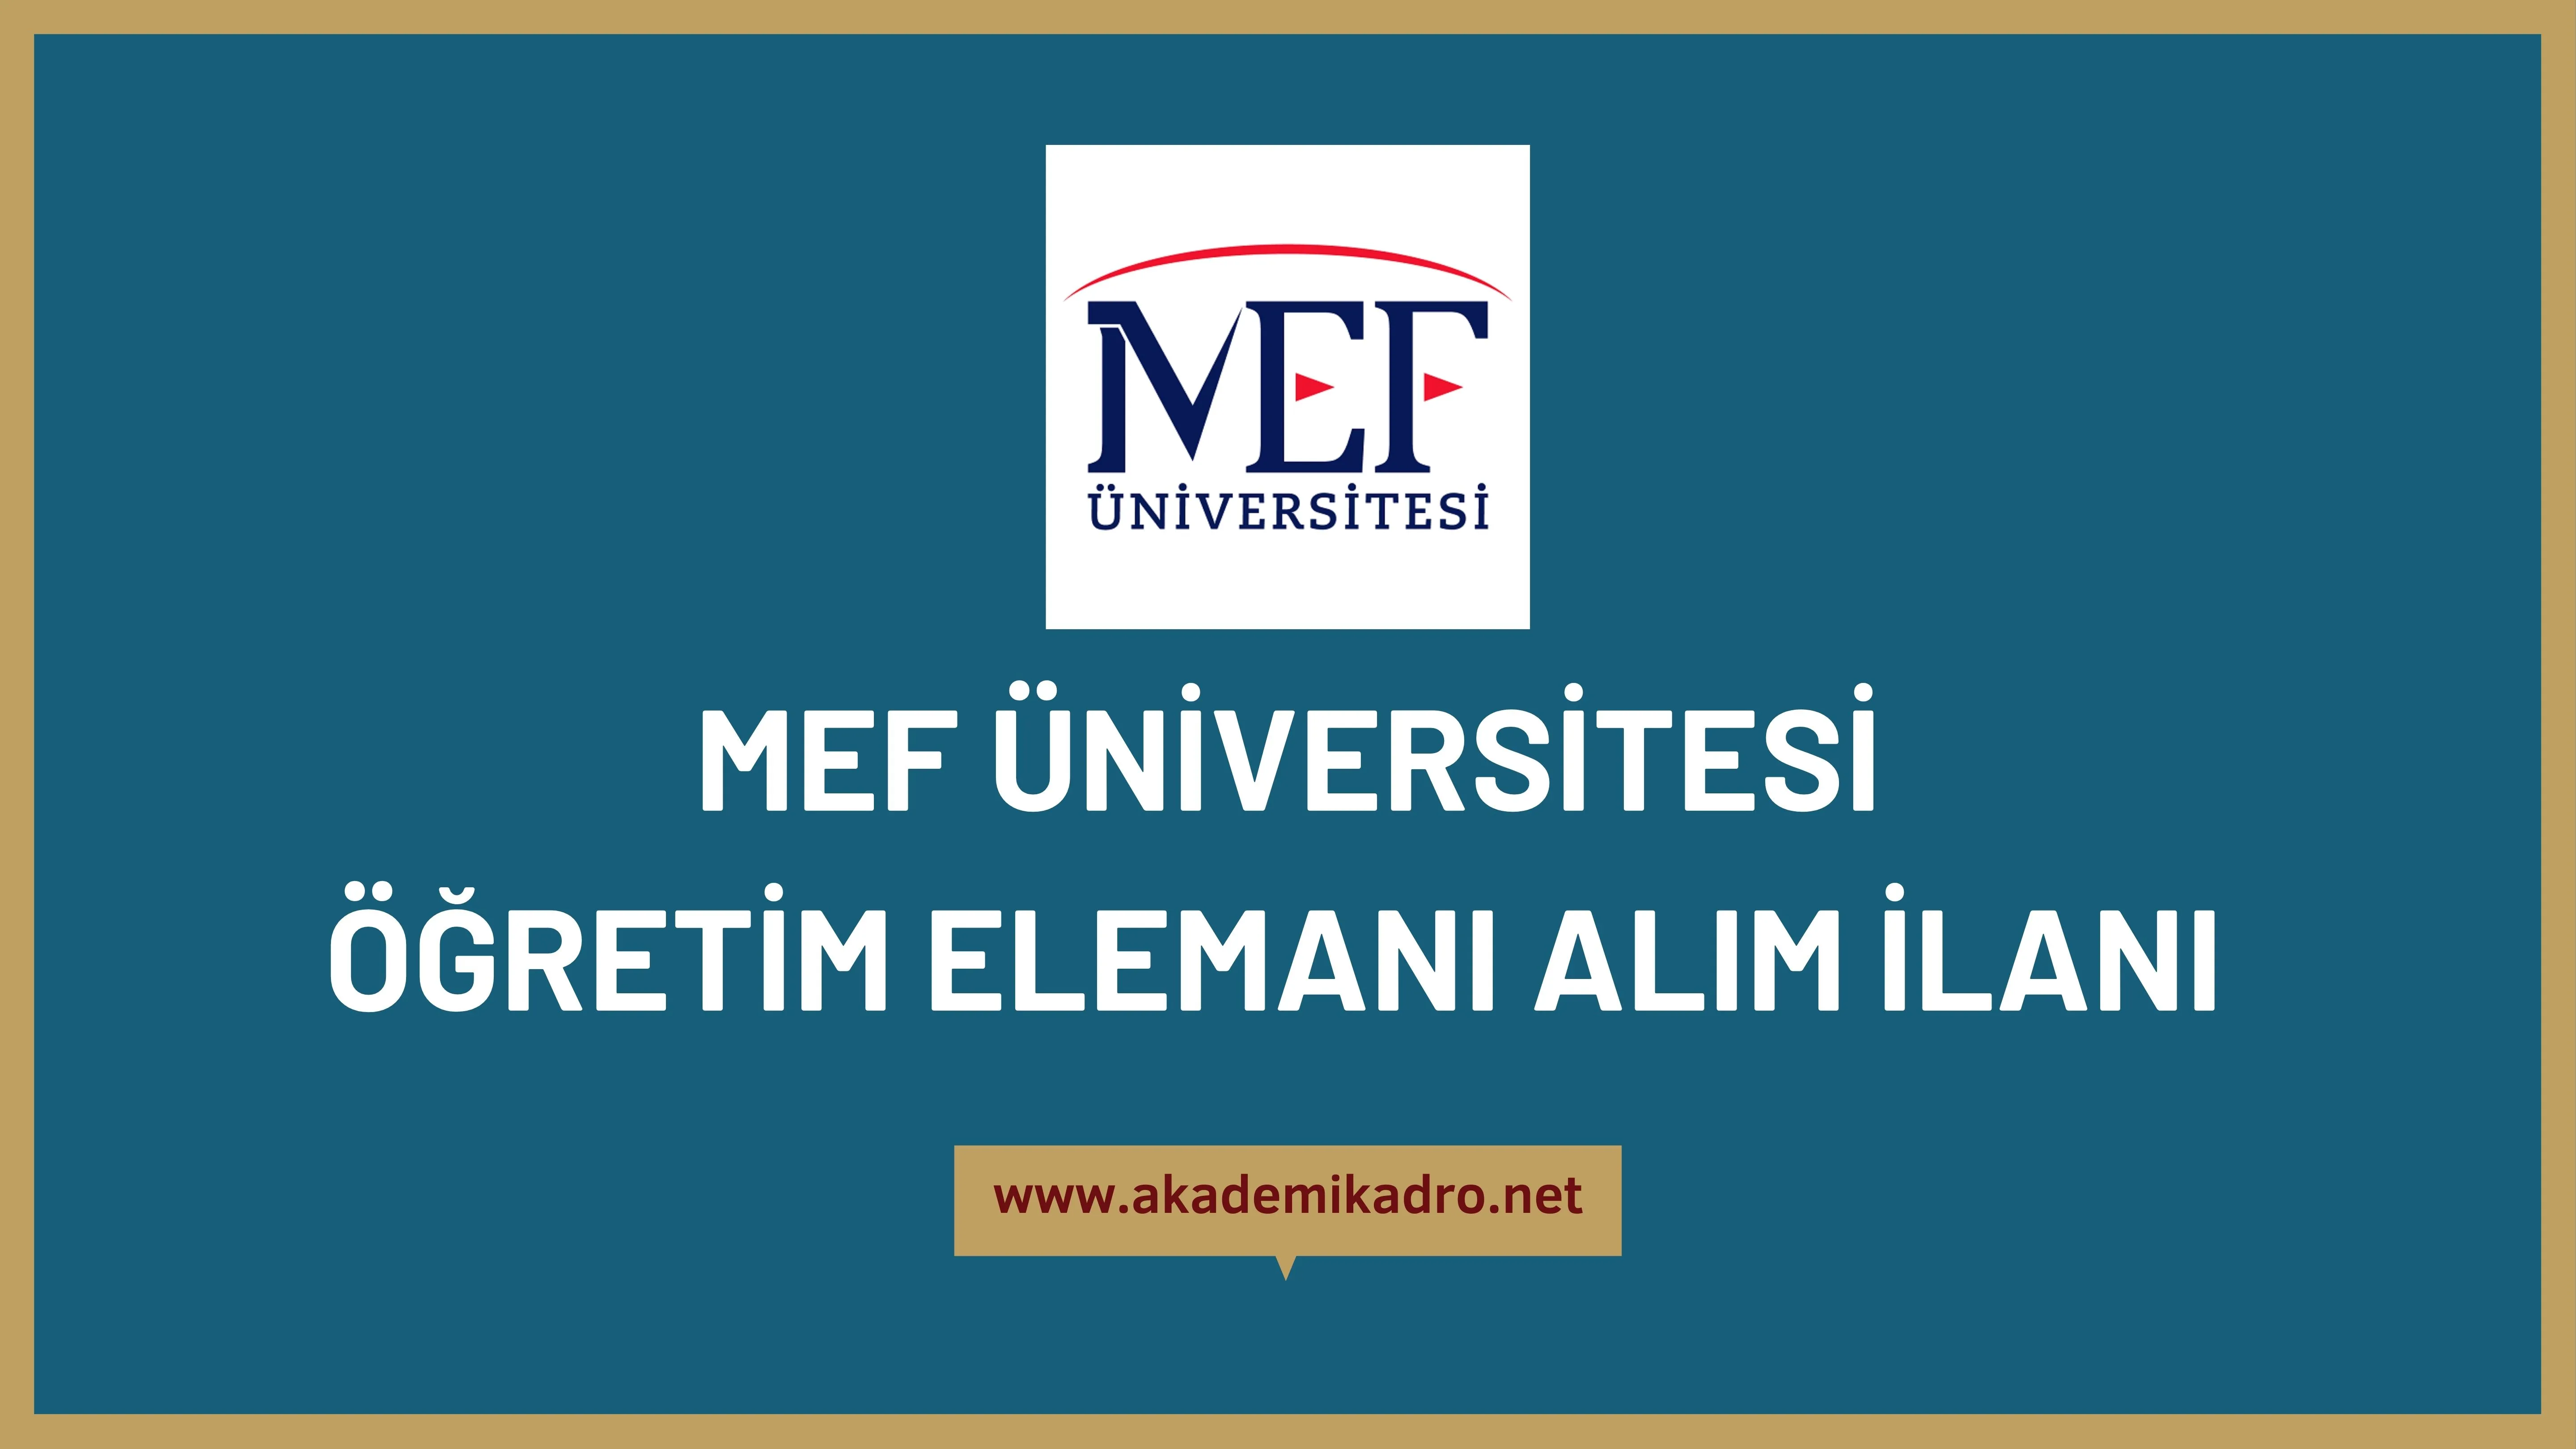 MEF Üniversitesi 16 öğretim üyesi ve 2 Araştırma görevlisi alacaktır.